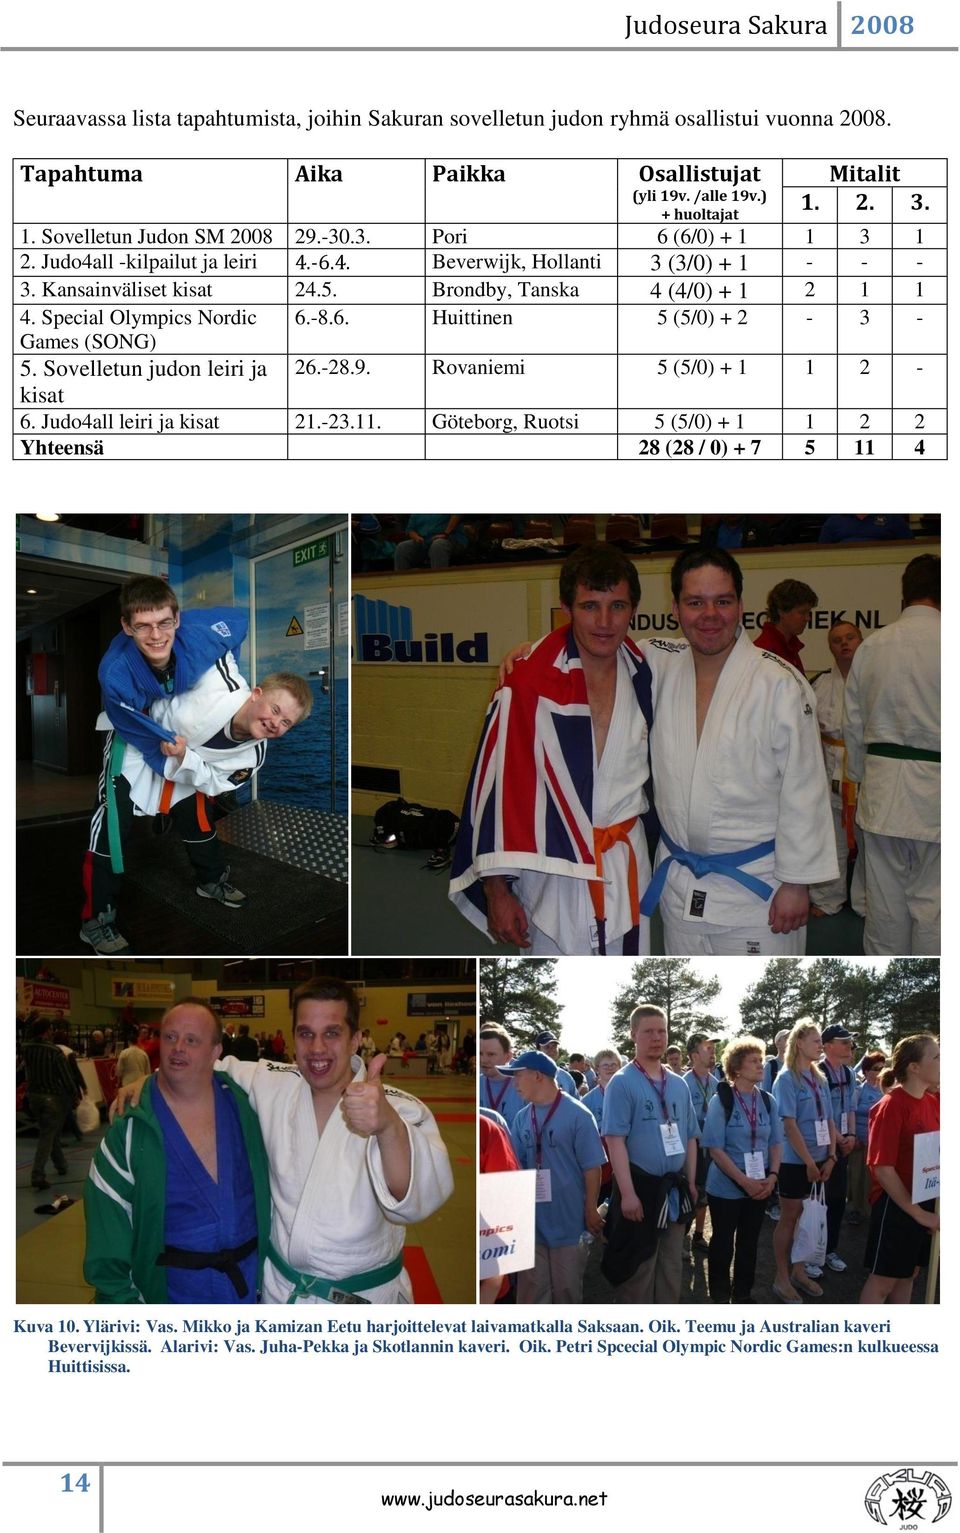 Special Olympics Nordic 6.-8.6. Huittinen 5 (5/0) + 2-3 - Games (SONG) 5. Sovelletun judon leiri ja 26.-28.9. Rovaniemi 5 (5/0) + 1 1 2 - kisat 6. Judo4all leiri ja kisat 21.-23.11.